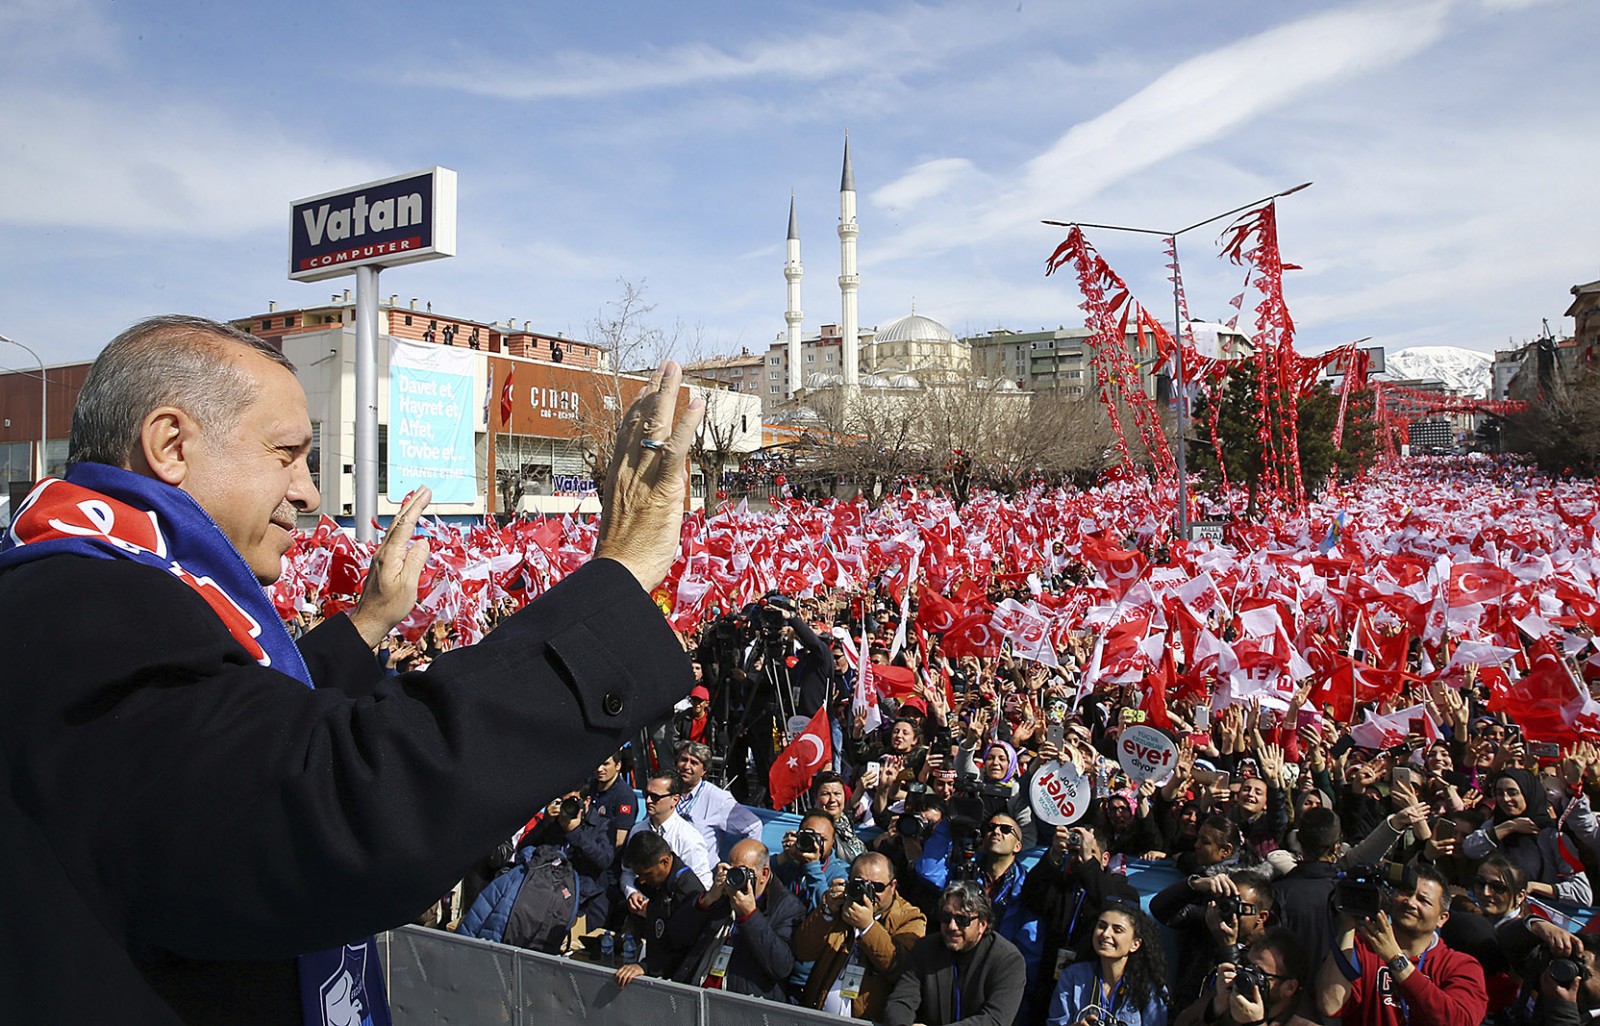 נשיא טורקיה, רג'פ טאיפ ארדואן, בעצרת תומכים לקראת משאל העם, אפריל 2017. (צילום: Kayhan Ozer/Presidential Press Service, Pool Photo via AP).